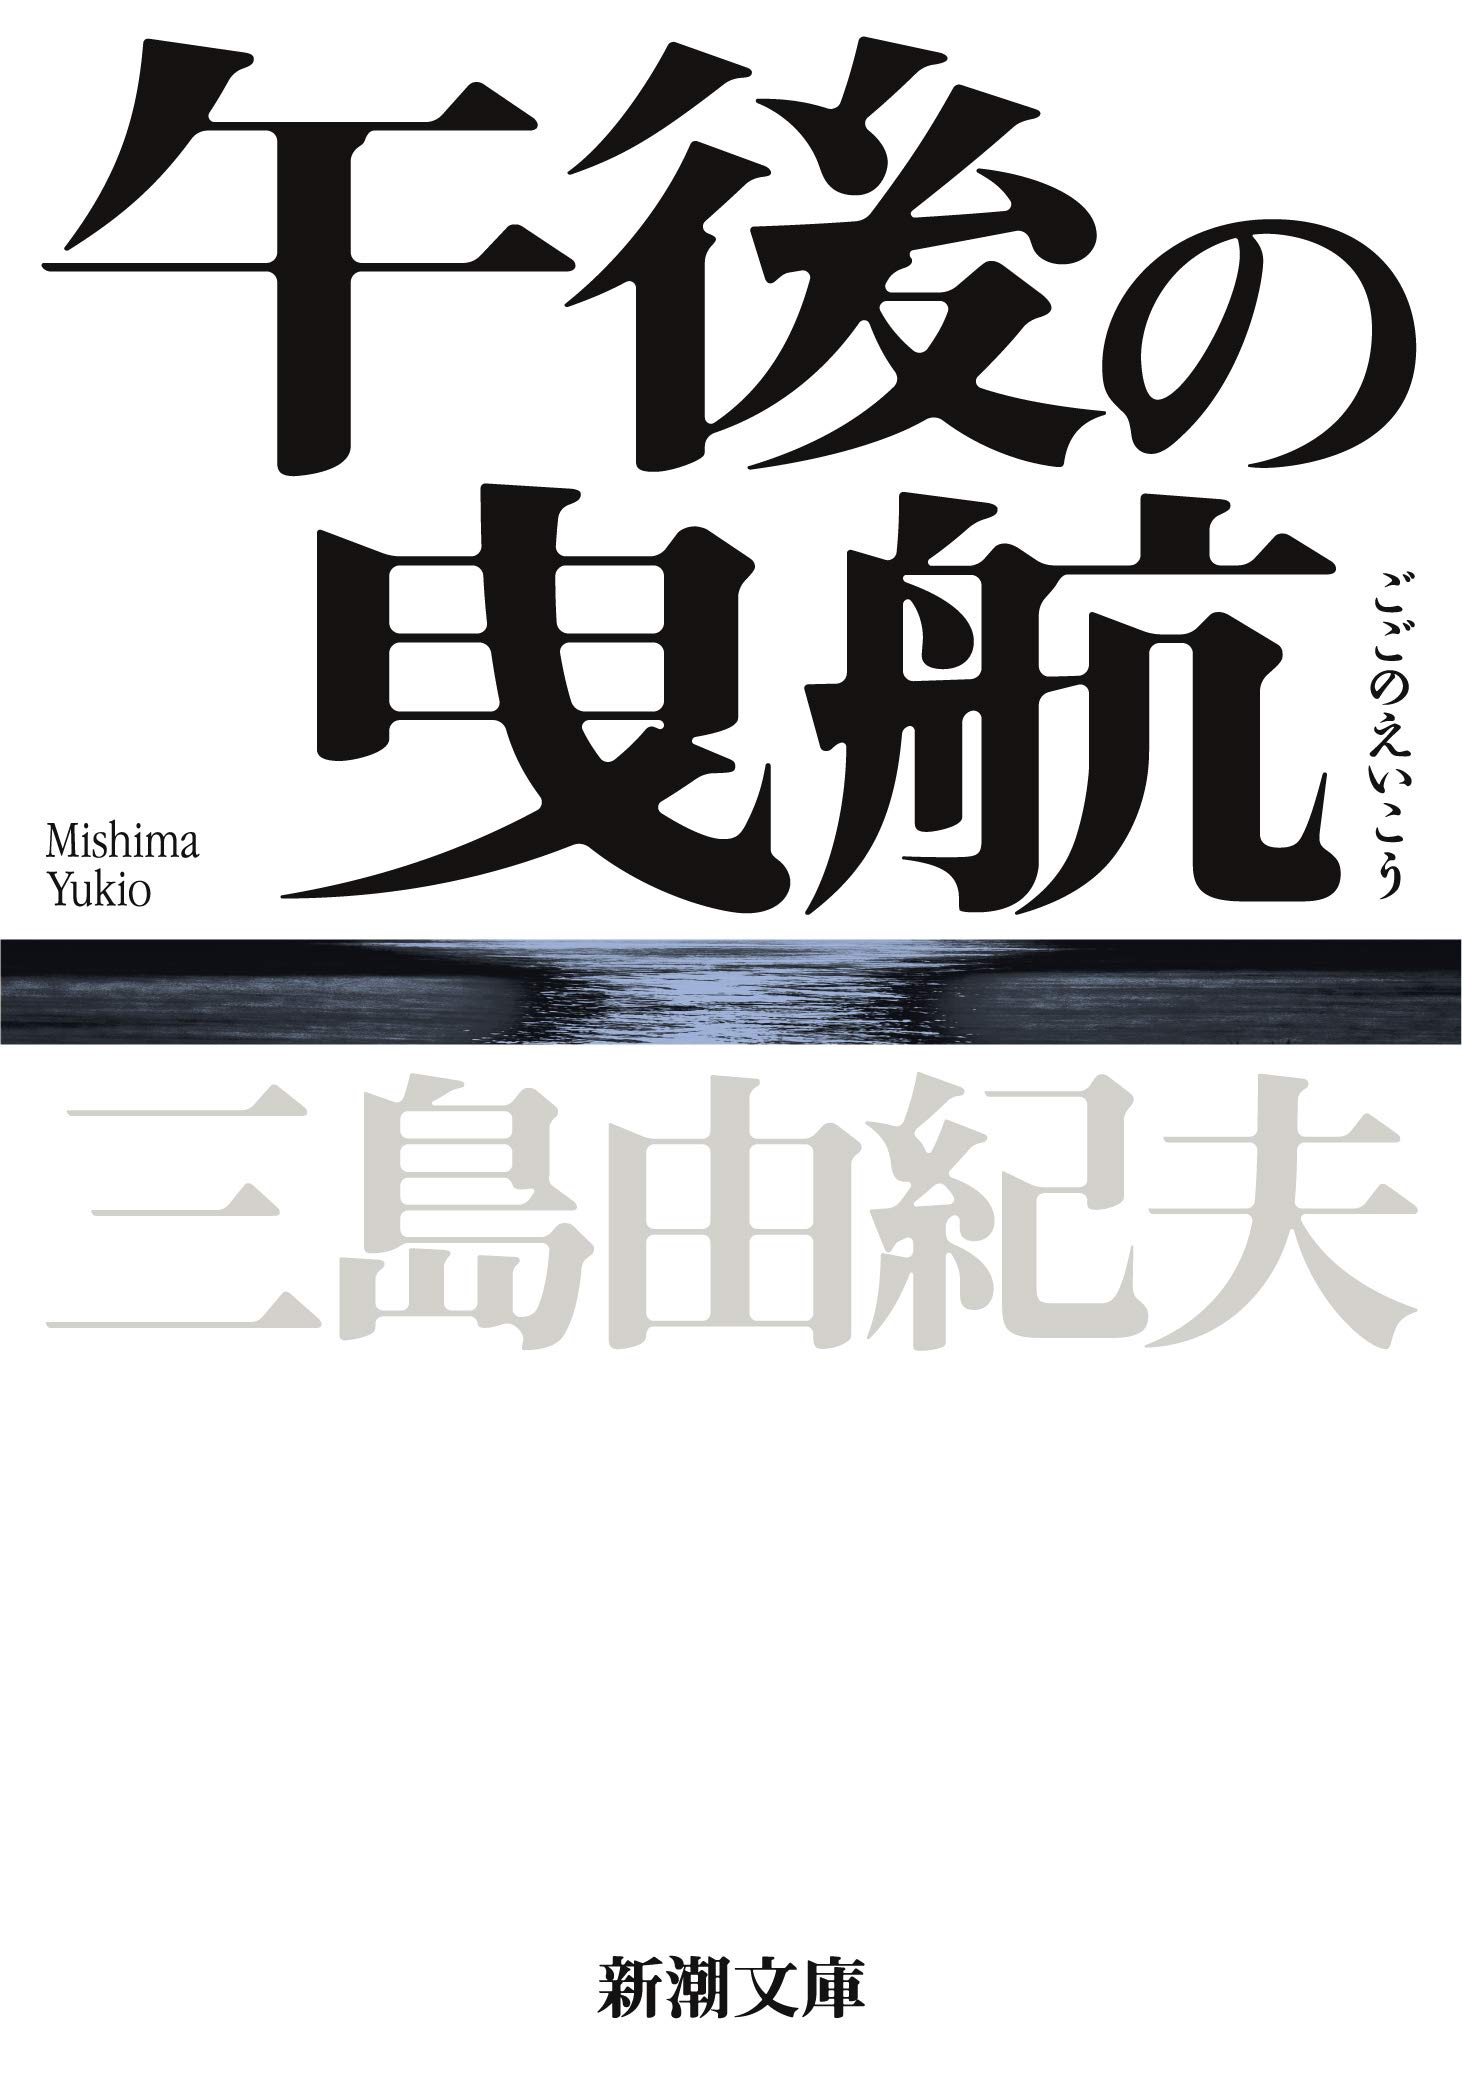 三島由紀夫（2020）『午後の曳航』新潮文庫